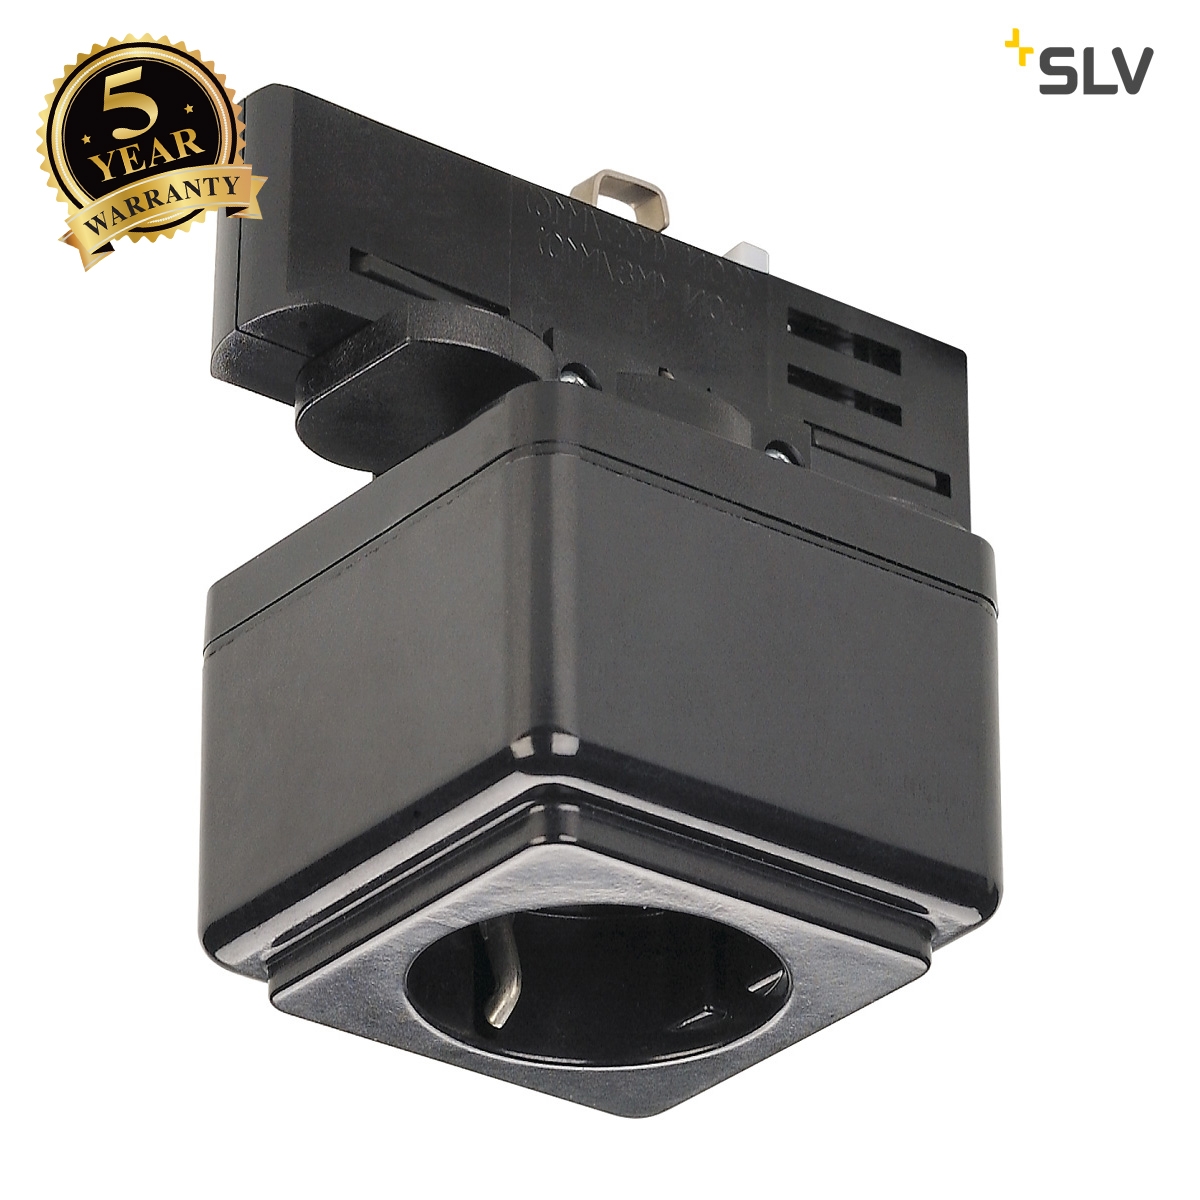 SLV EUTRAC power socket adapter, black 145700